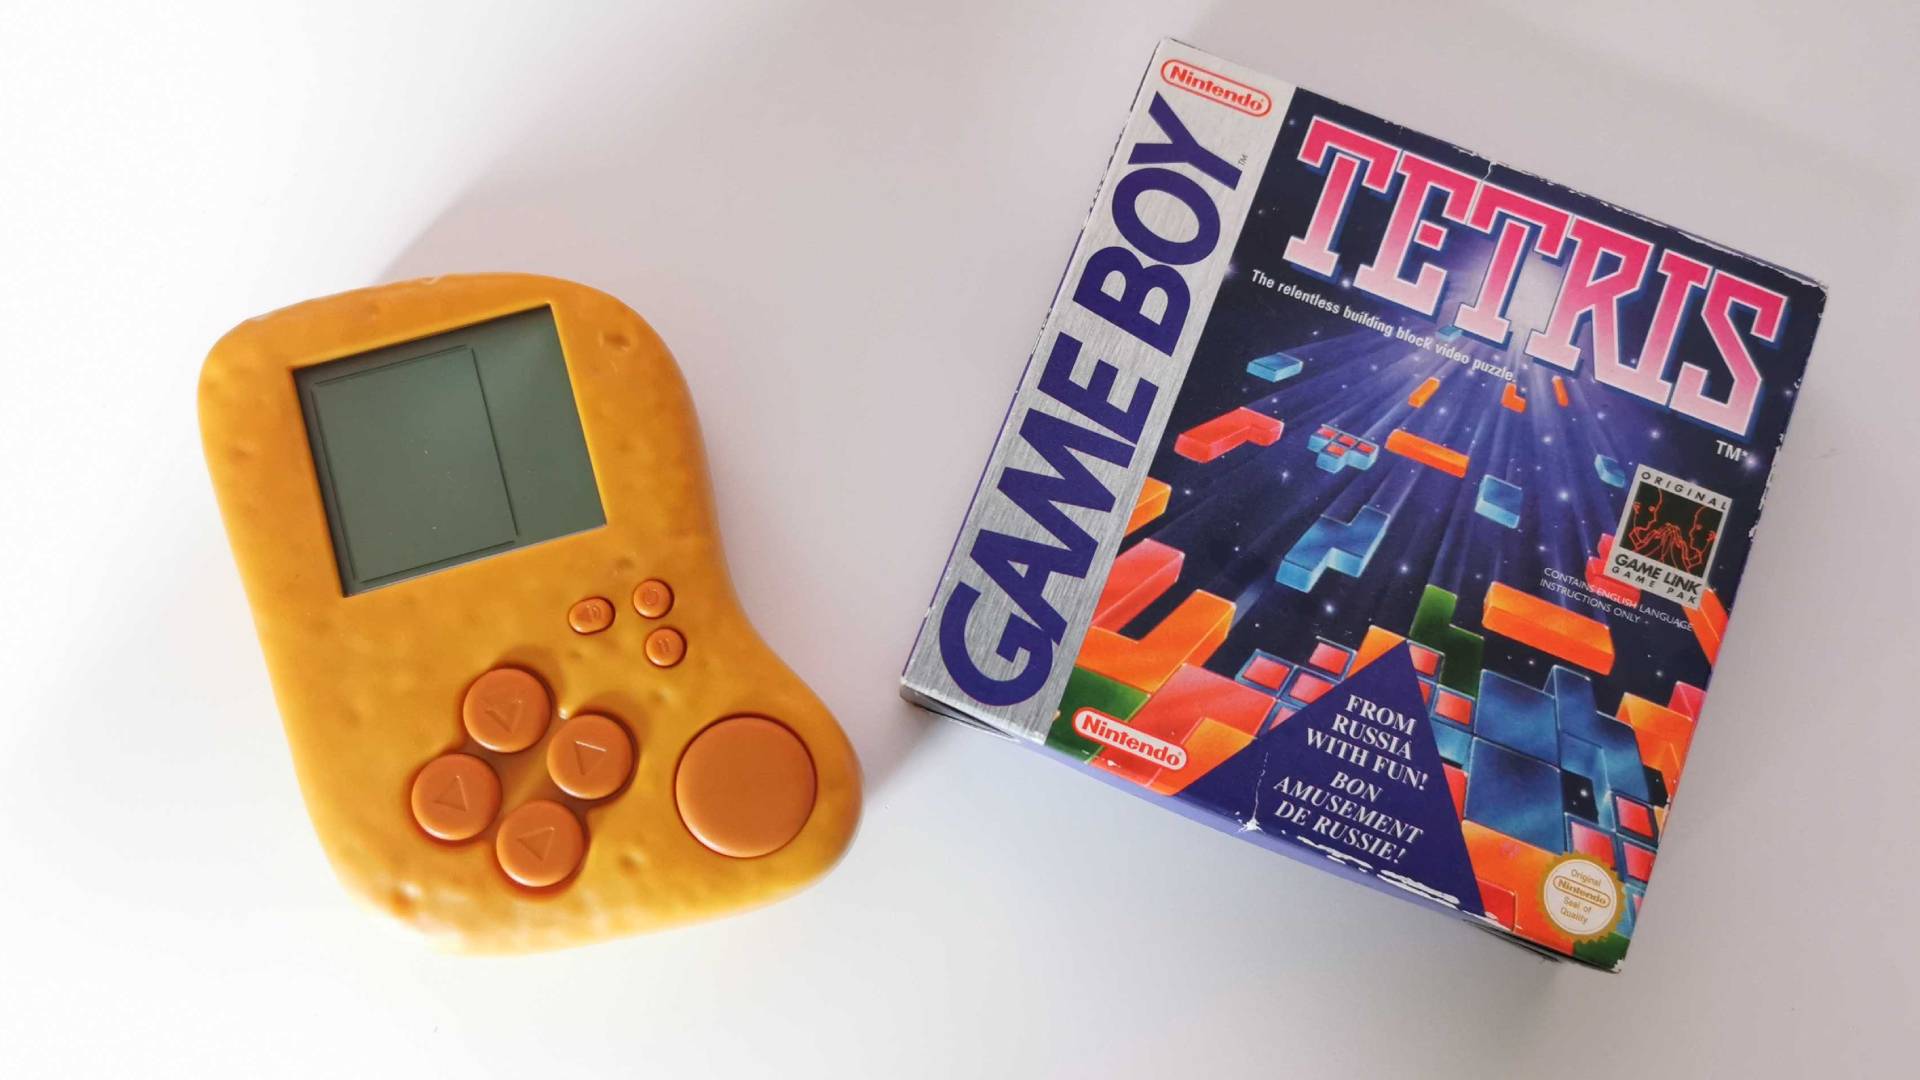 Ordinateur de poche Mcnugget à côté d'une copie de Tetris pour Game Boy